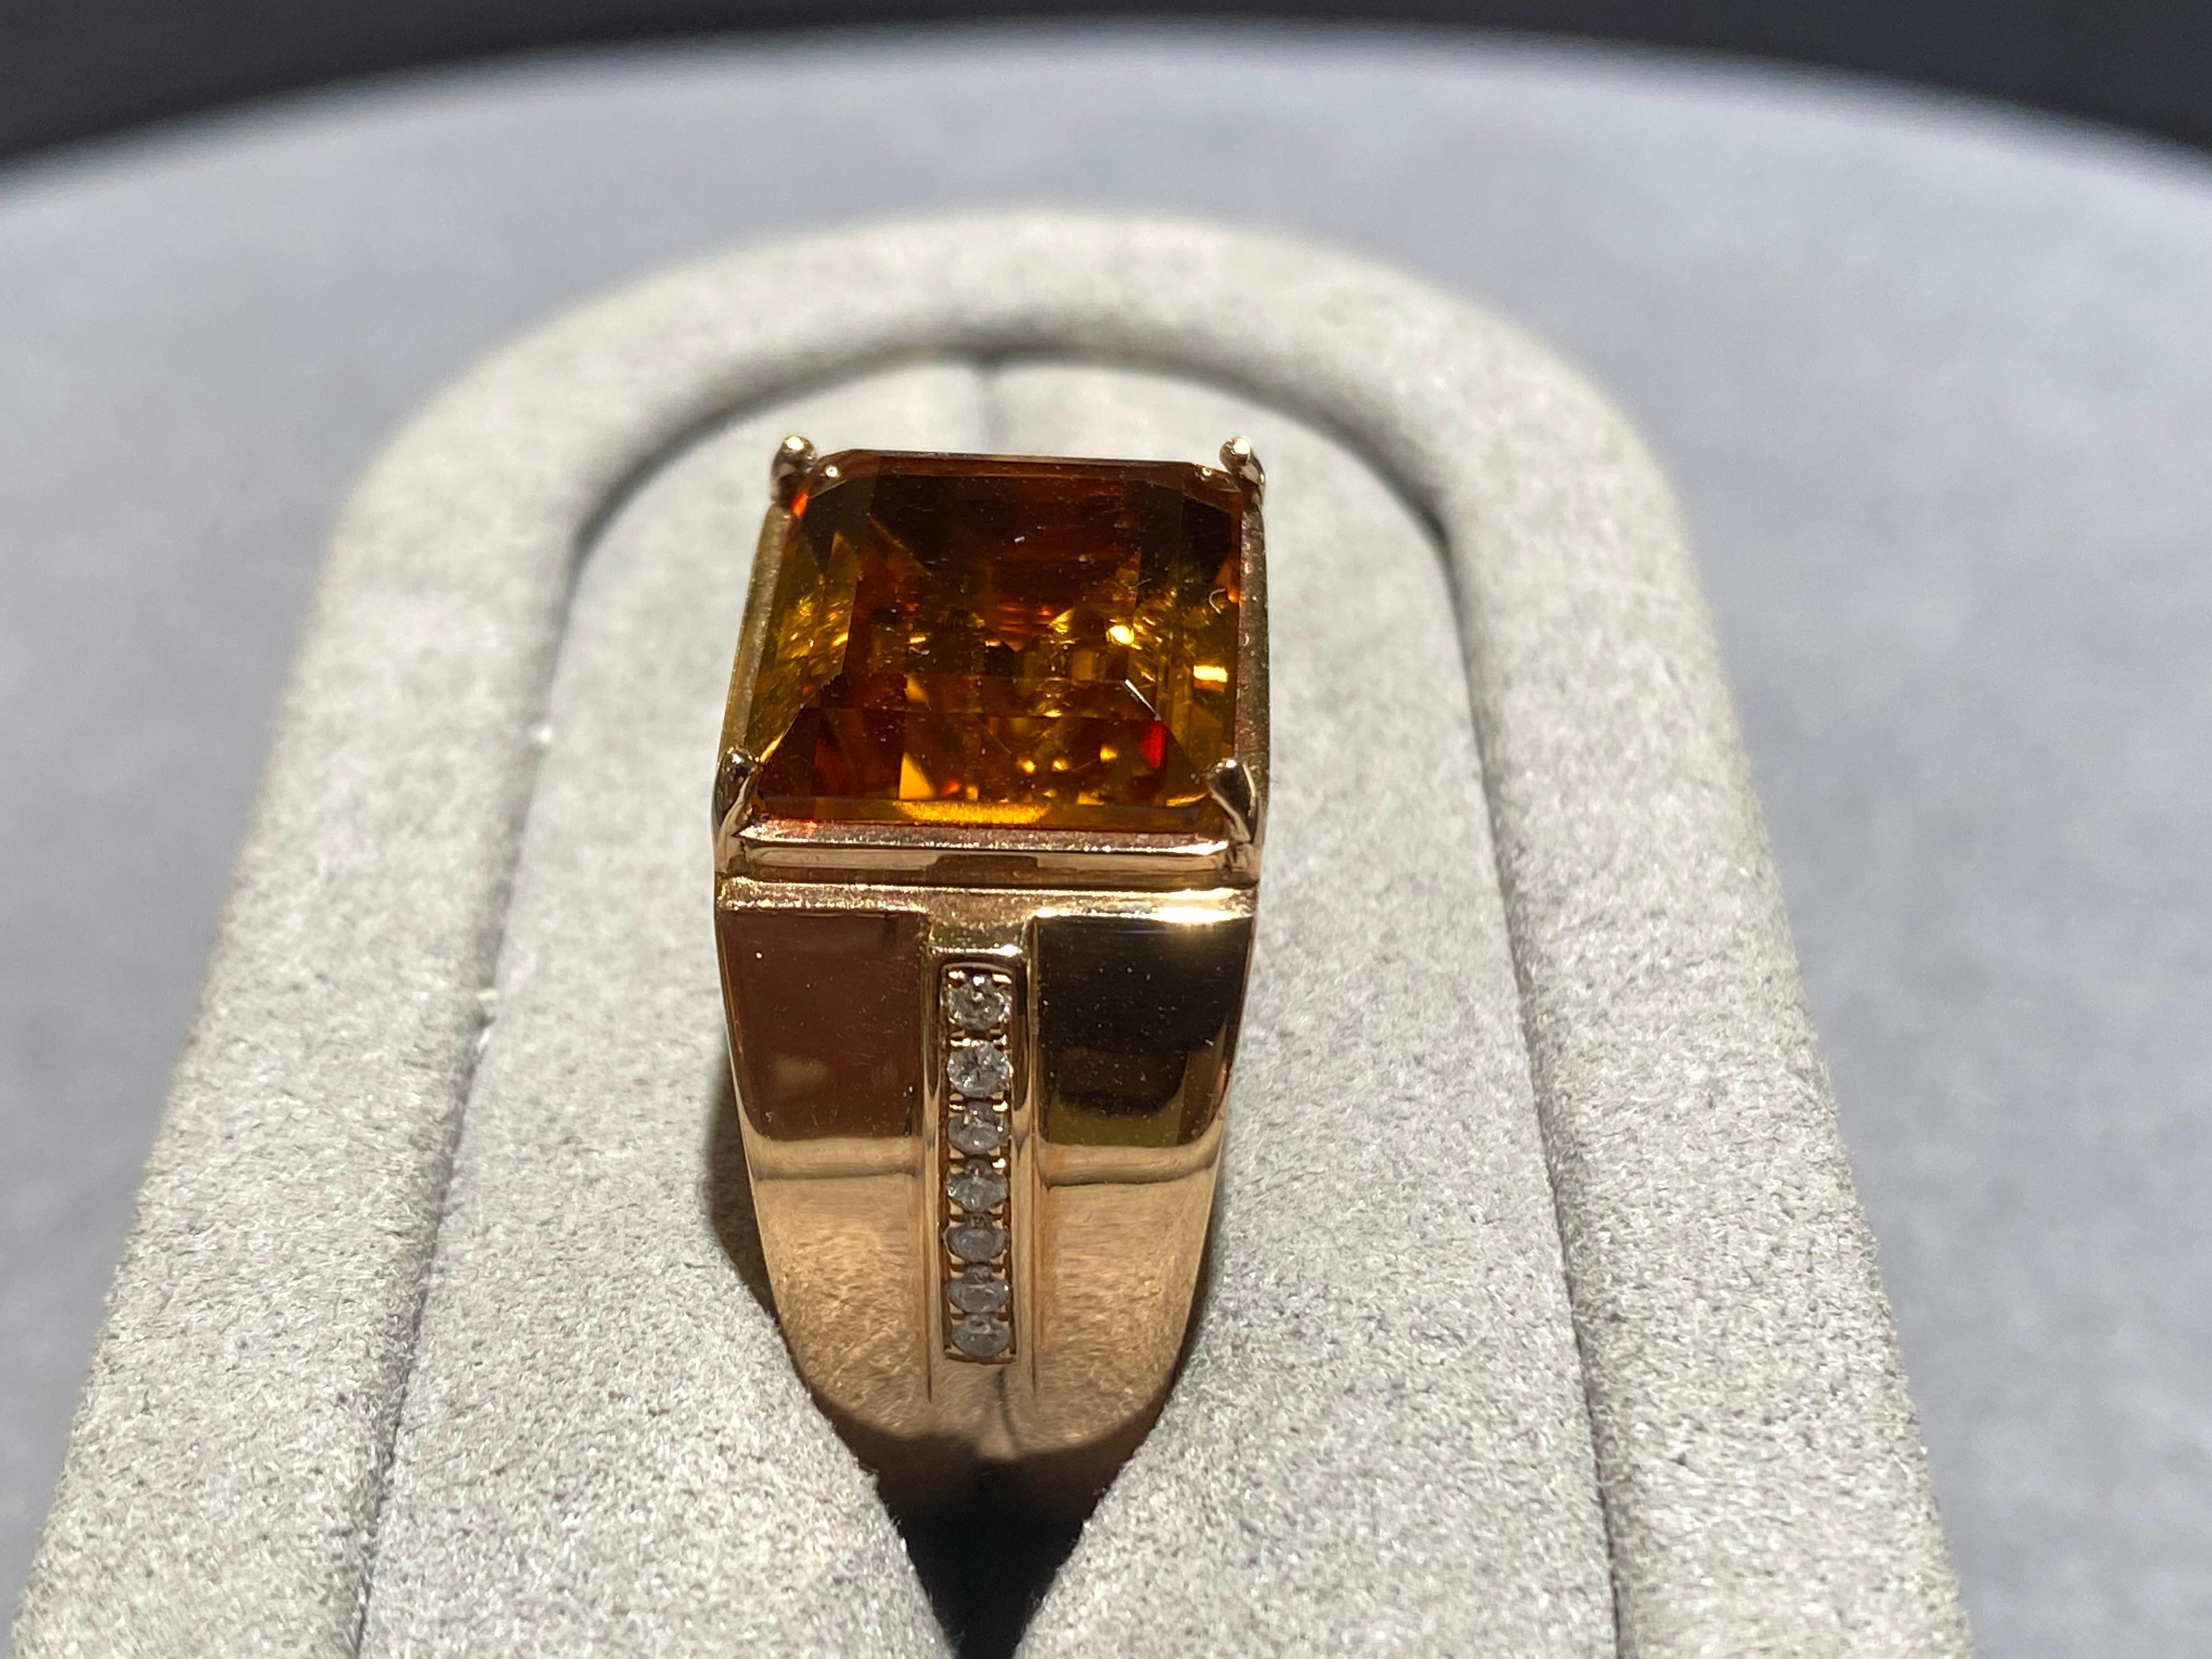 Bague en or rose 18 carats ornée d'une citrine et de diamants. Il s'agit d'un modèle simple avec la citrine principale au centre et deux lignes de diamants pavés sur les deux côtés de l'anneau. 

Taille de bague US 8.5
